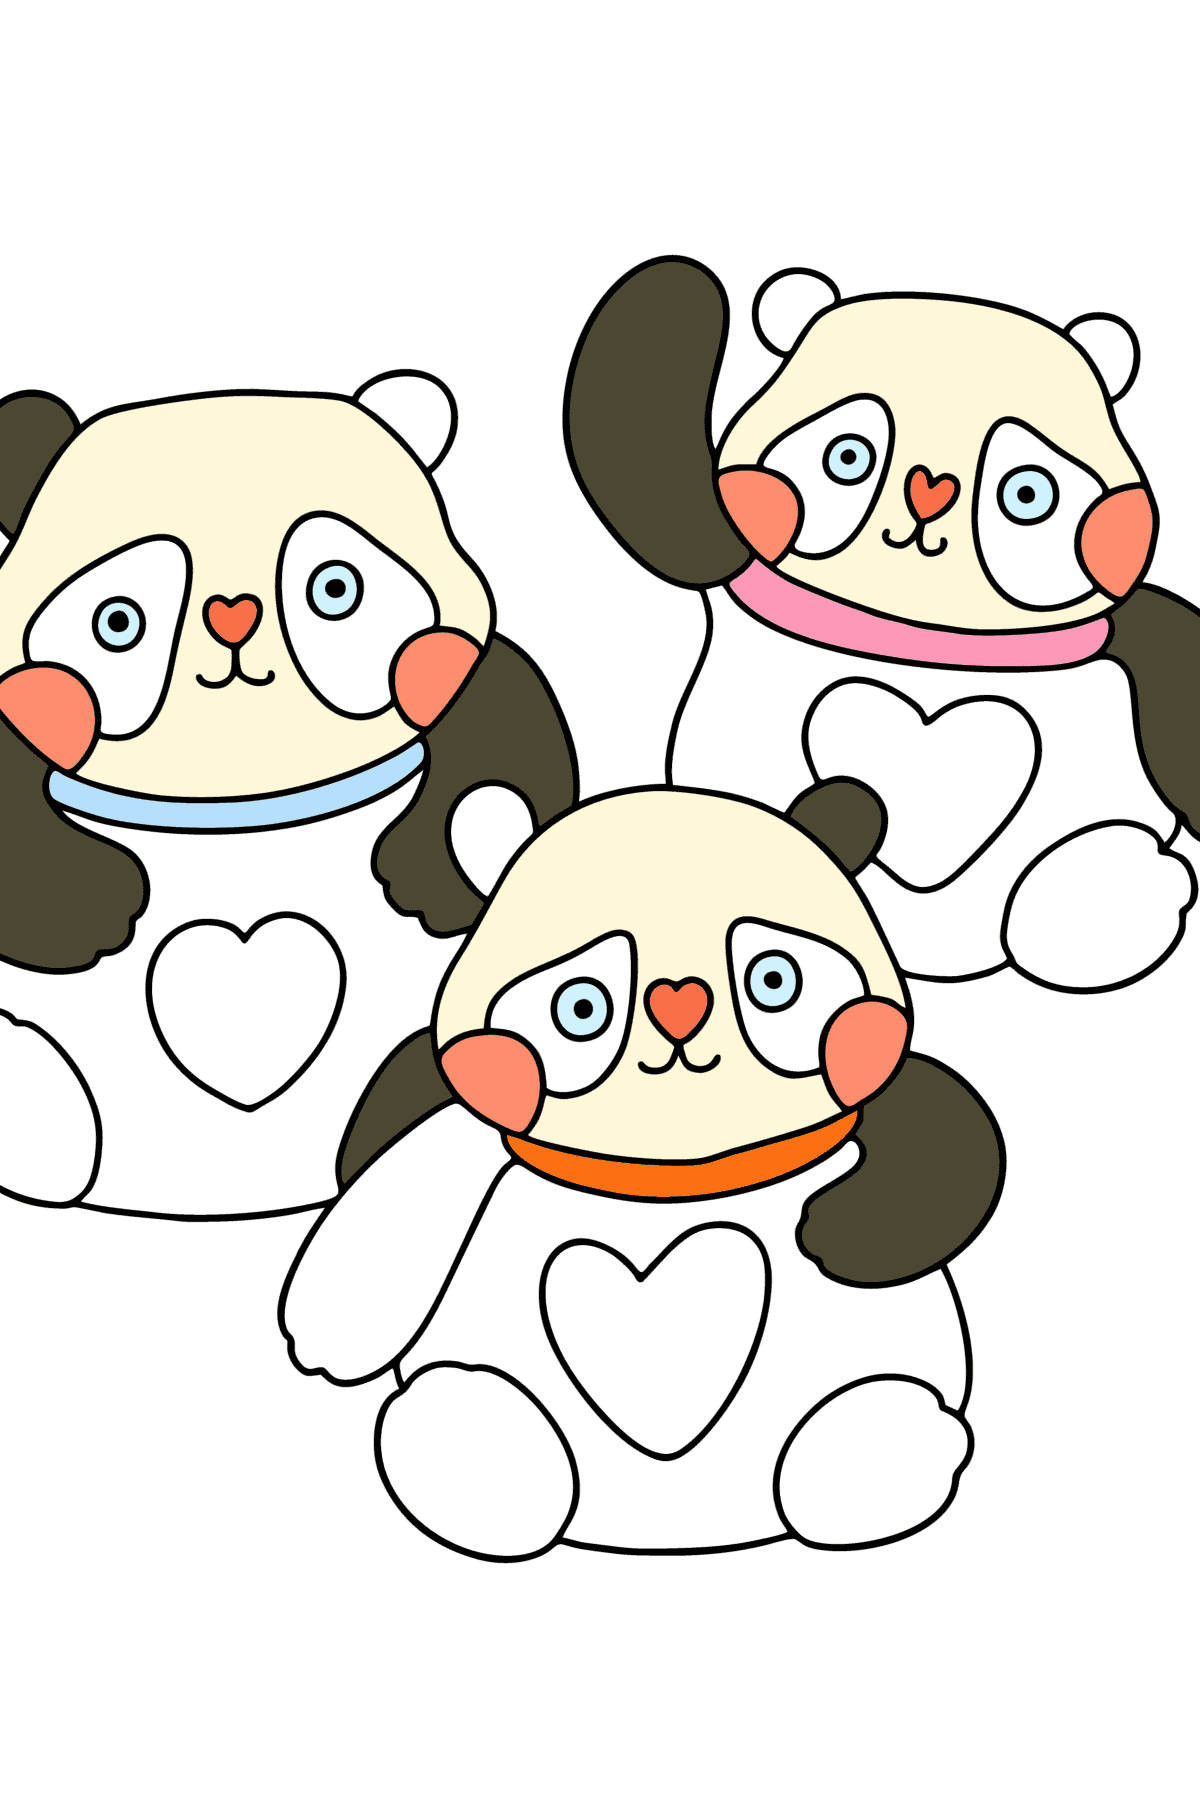 Coloriage pandas kawaii - Coloriages pour les Enfants